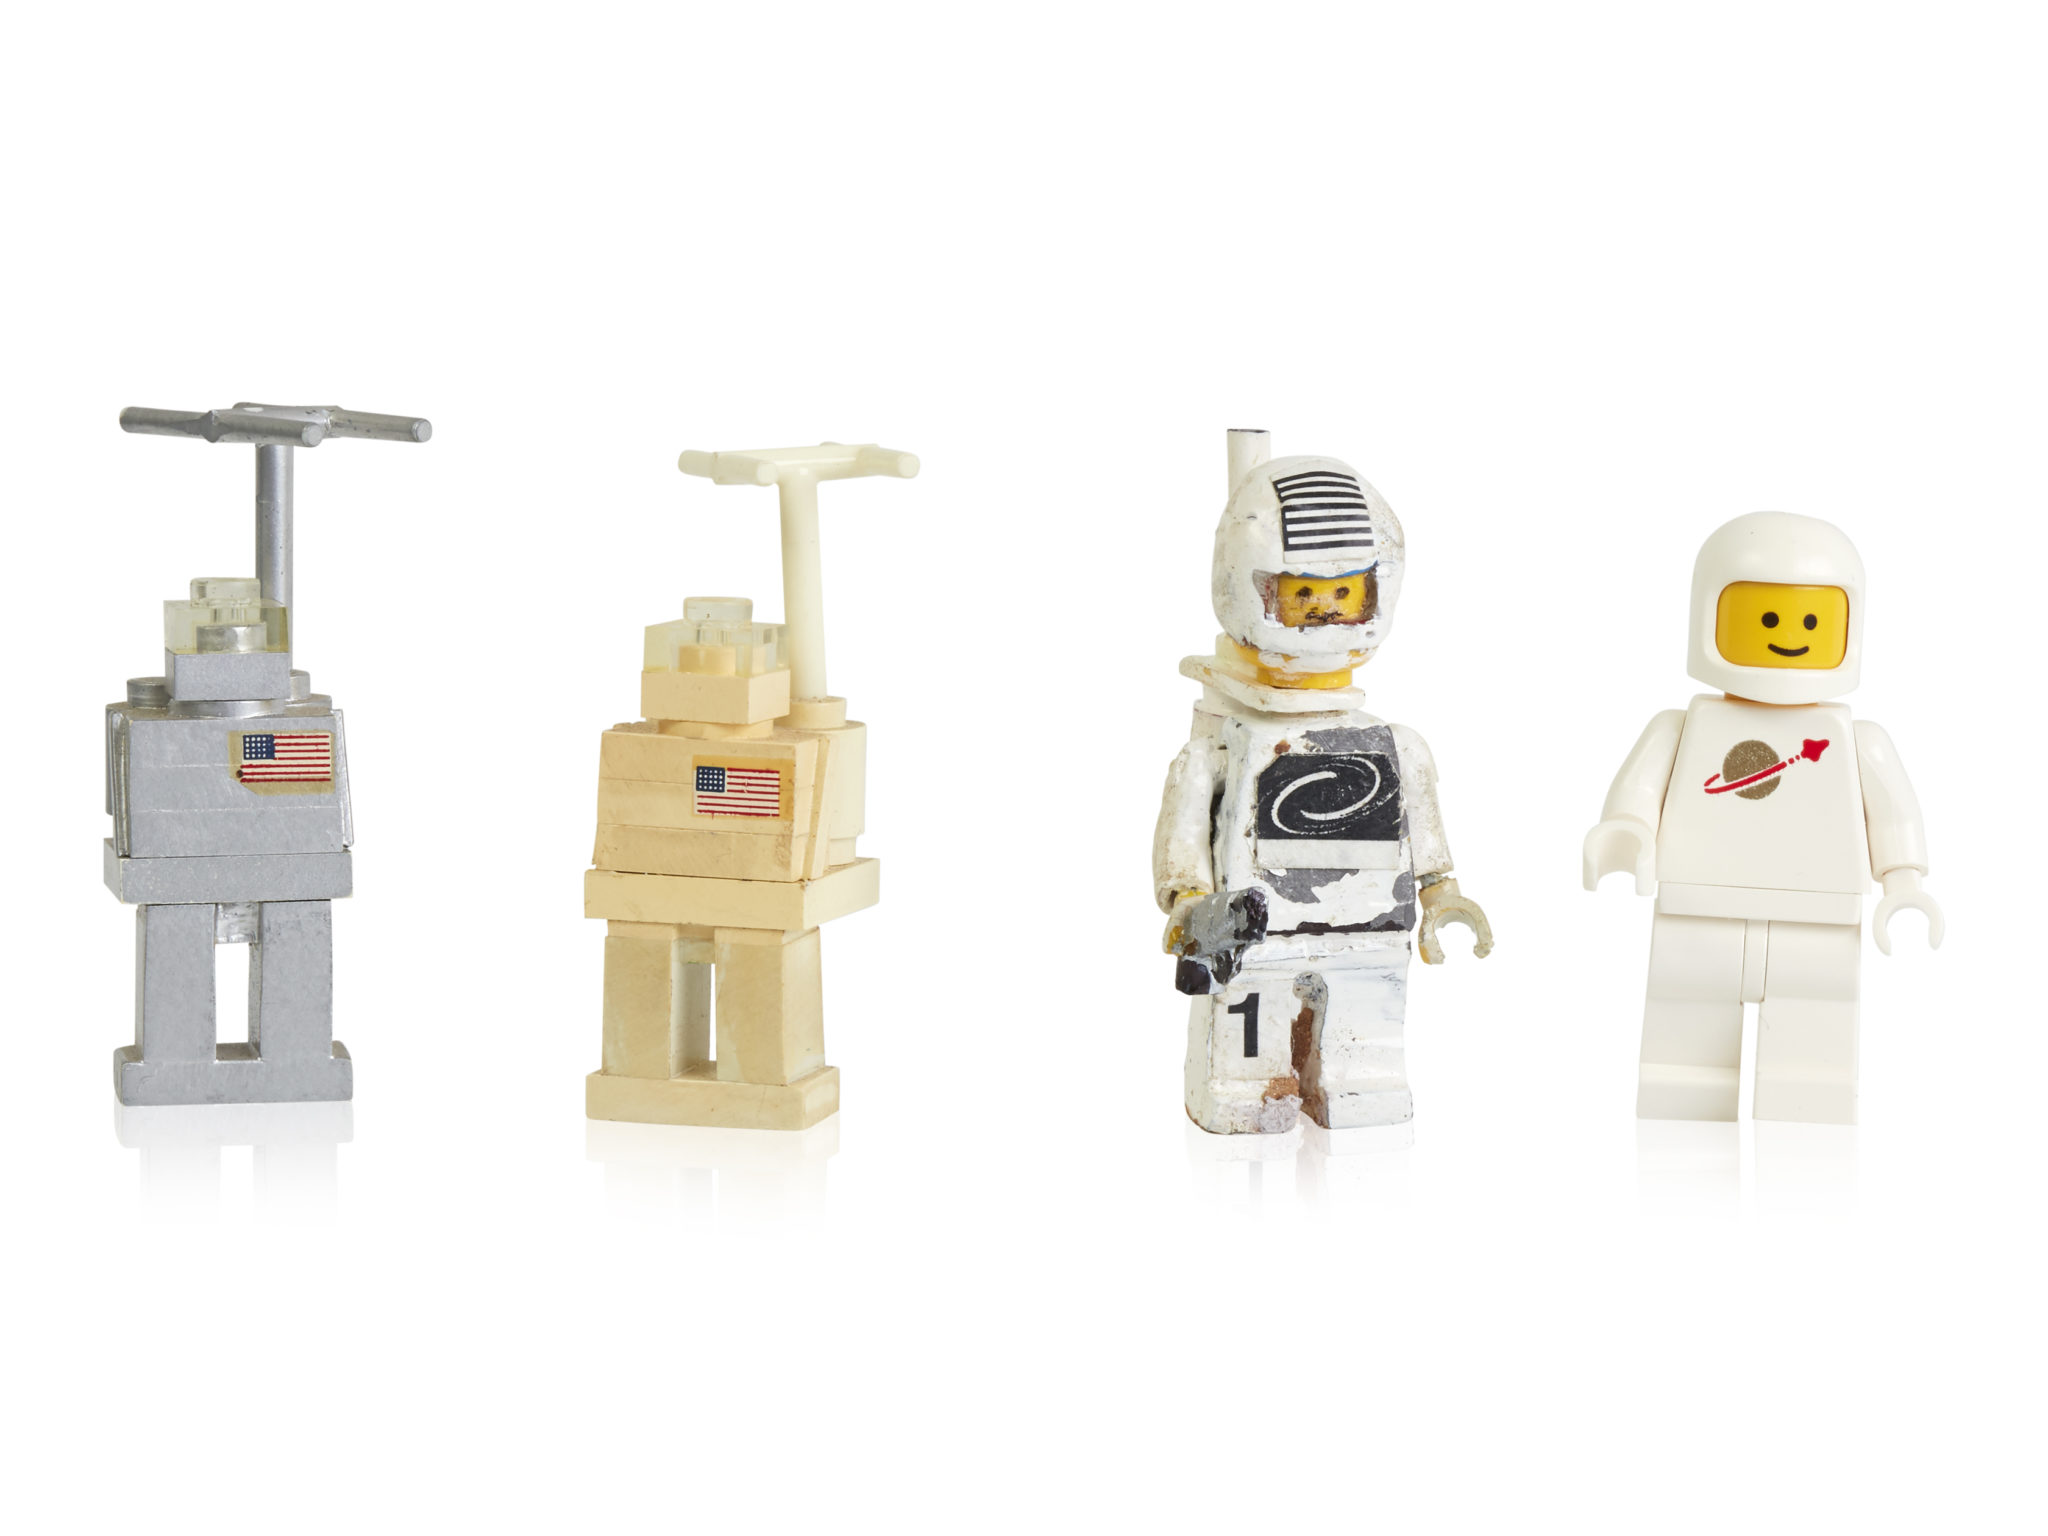 Early prototypes and first space minifigure 40-lecie minifigurek LEGO: jak zmieniały się na przestrzeni lat?